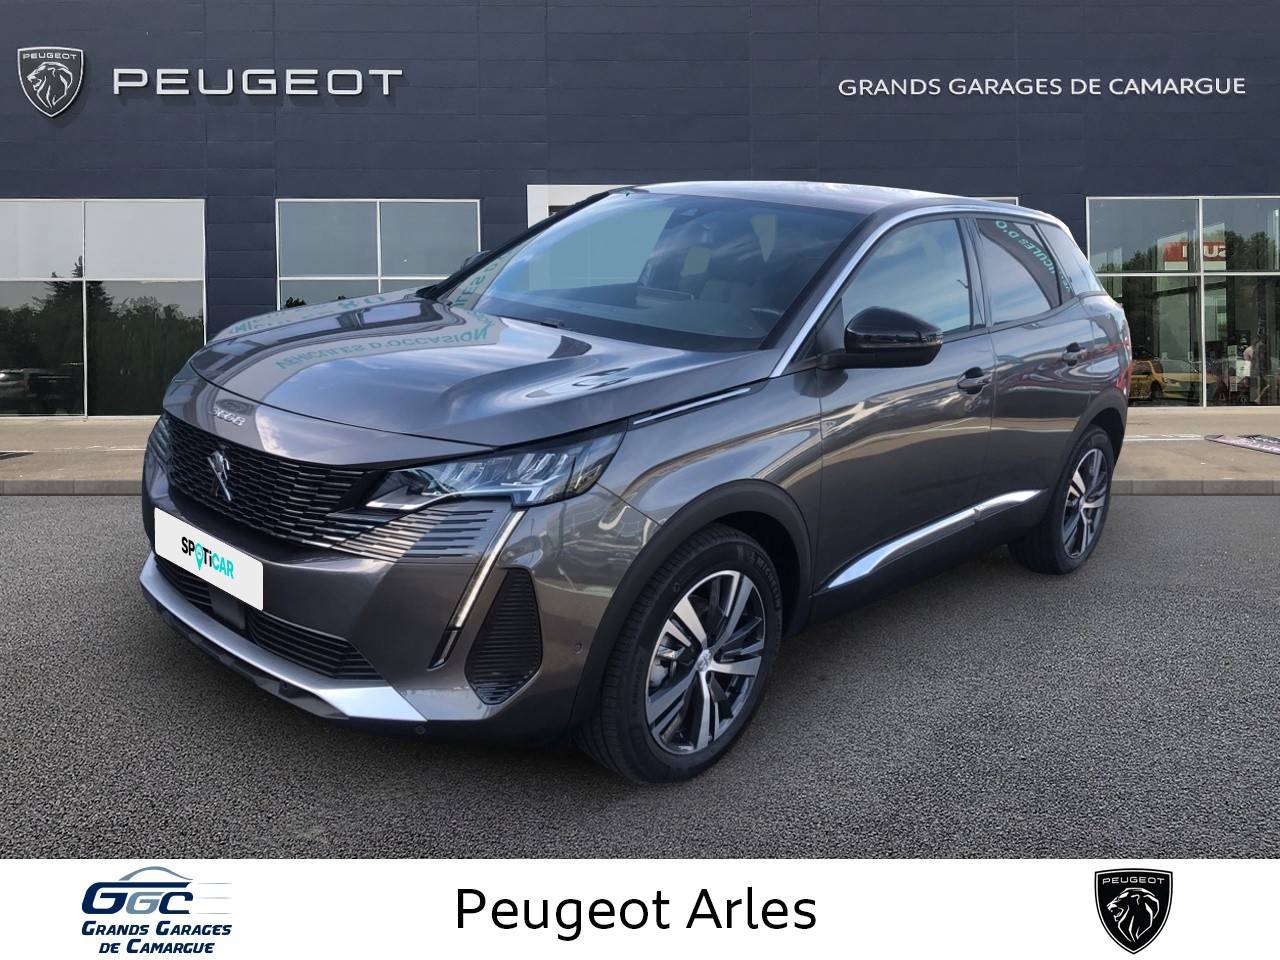 PEUGEOT 3008 | 3008 PureTech 130ch S&S EAT8 occasion - Peugeot Arles